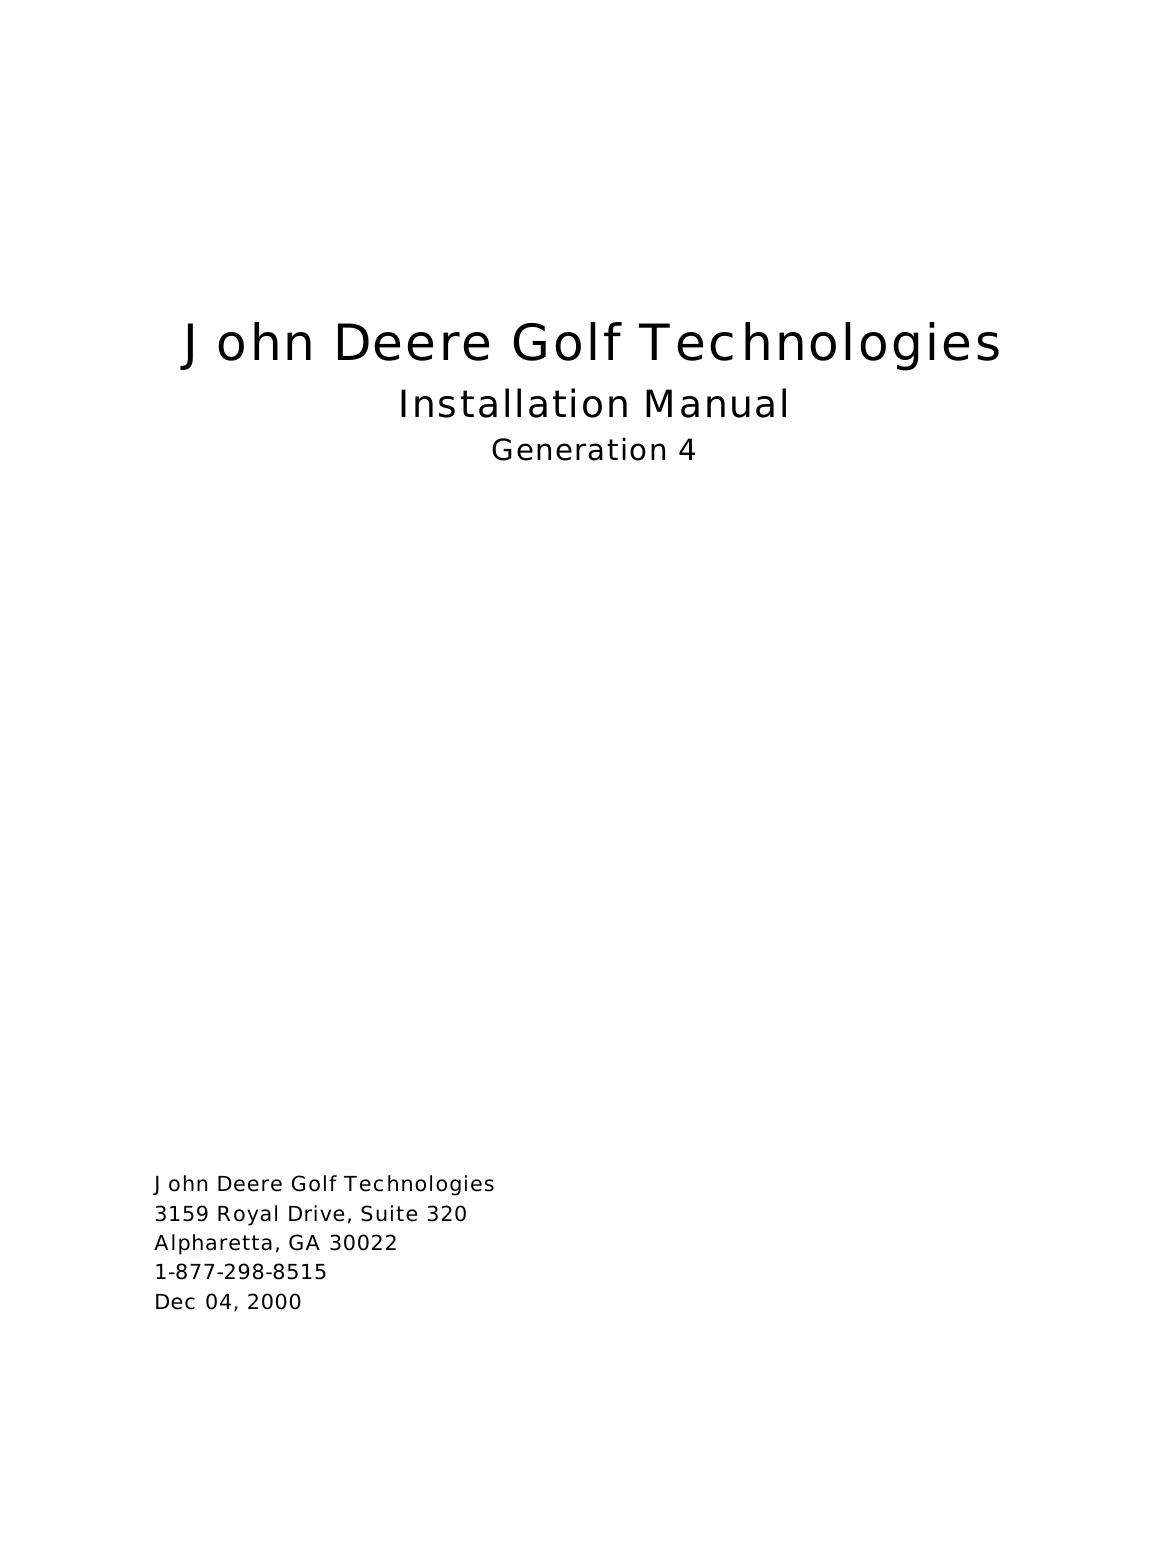          John Deere Golf Technologies Installation Manual Generation 4                     John Deere Golf Technologies   3159 Royal Drive, Suite 320  Alpharetta, GA 30022  1-877-298-8515   Dec 04, 2000 